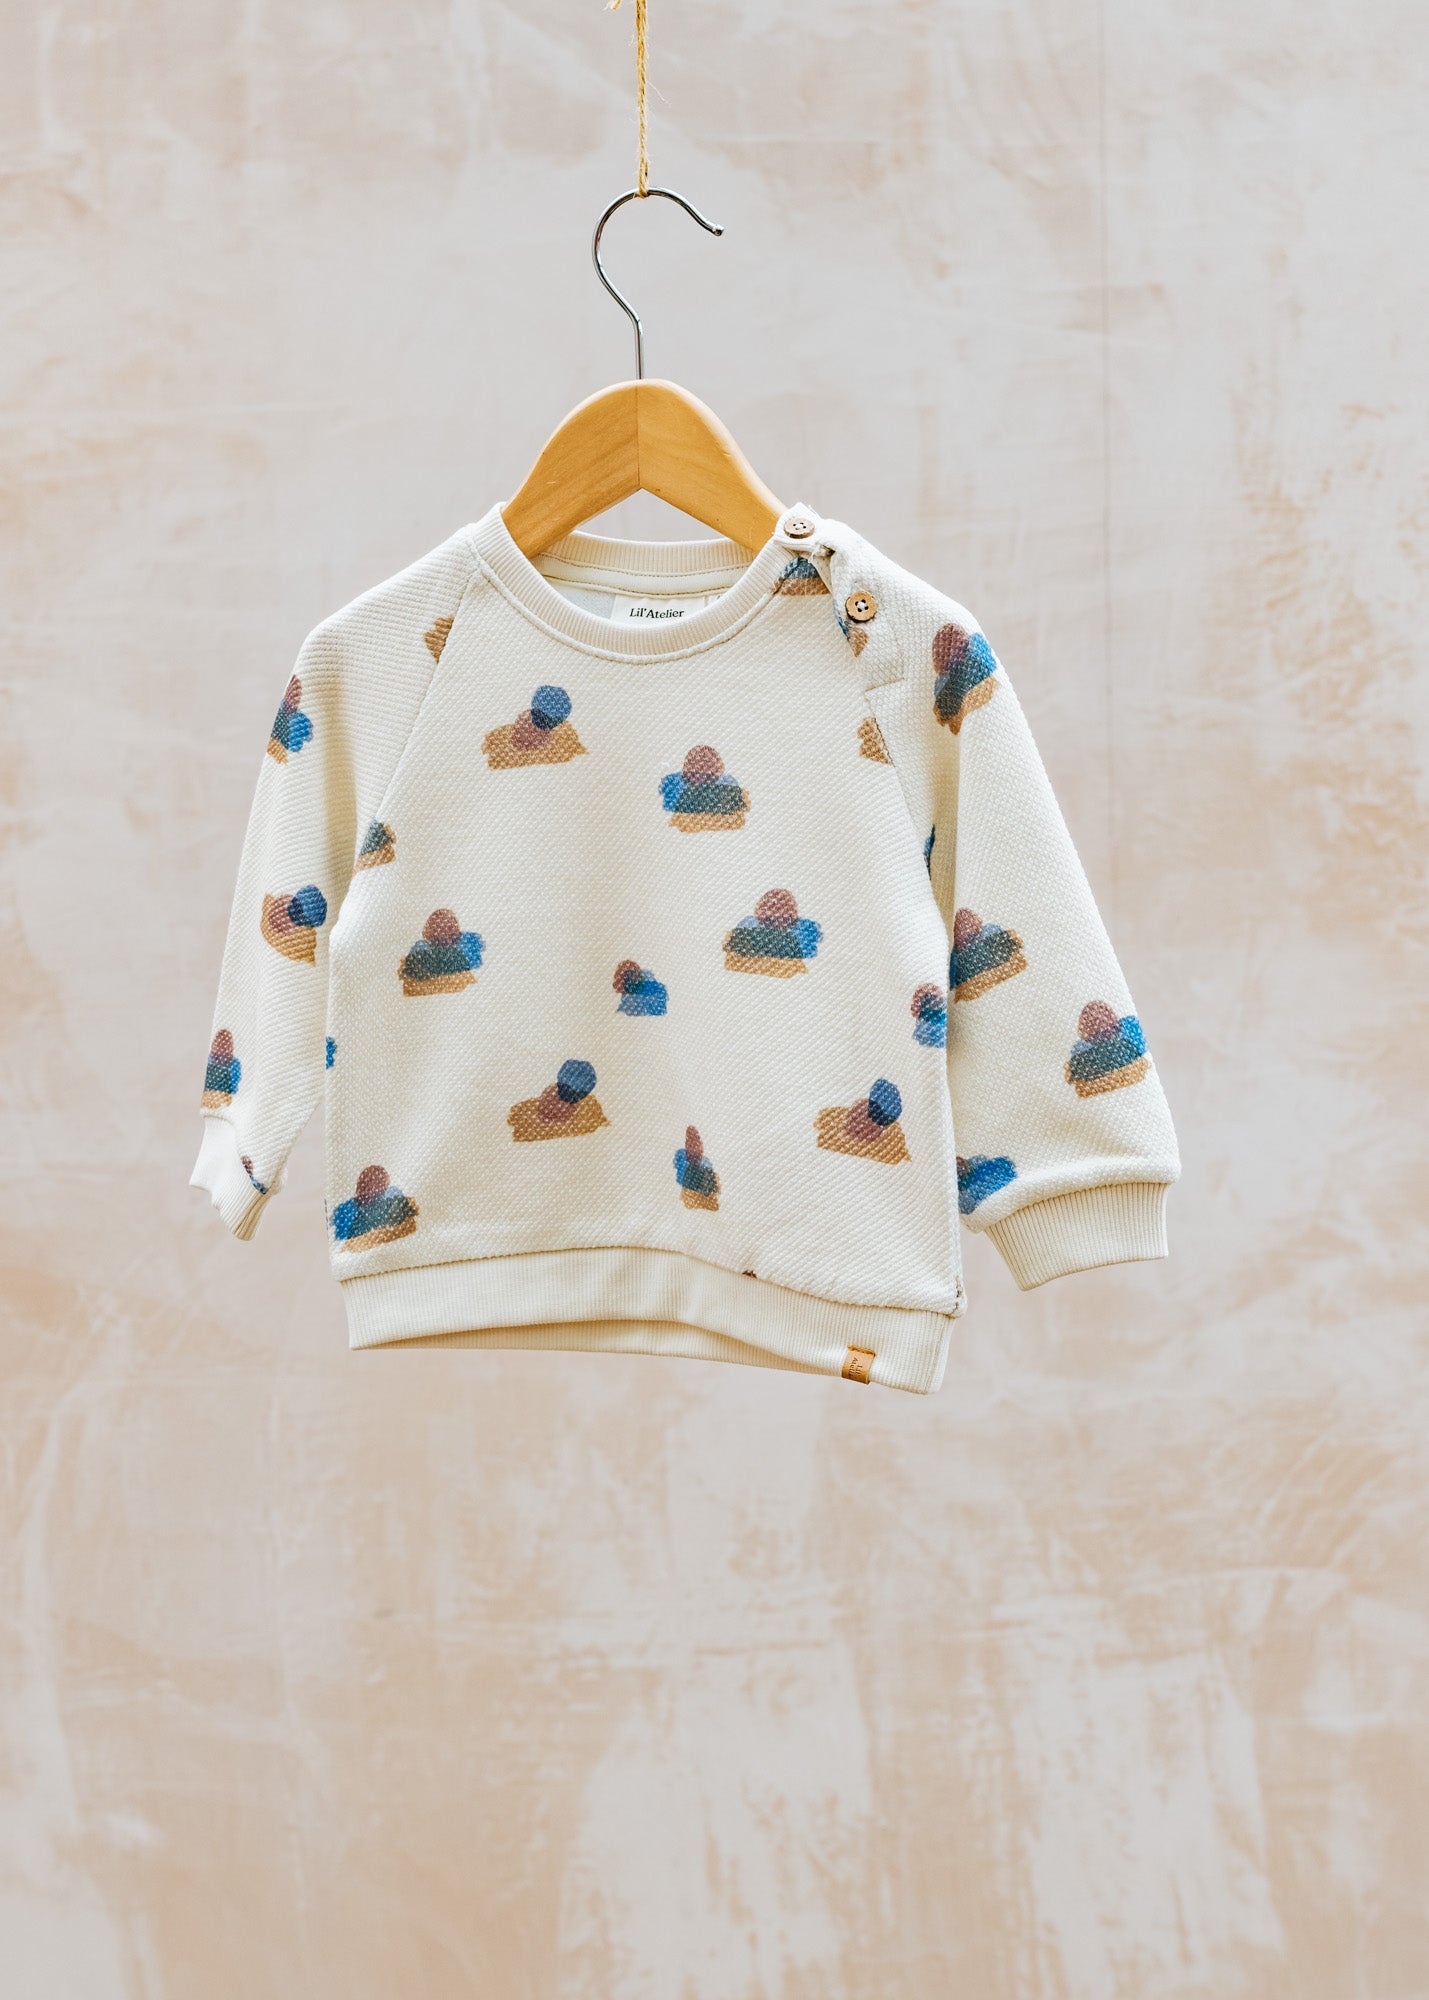 Lil' Atelier Babies' Nolan Sweatshirt in Turtledove